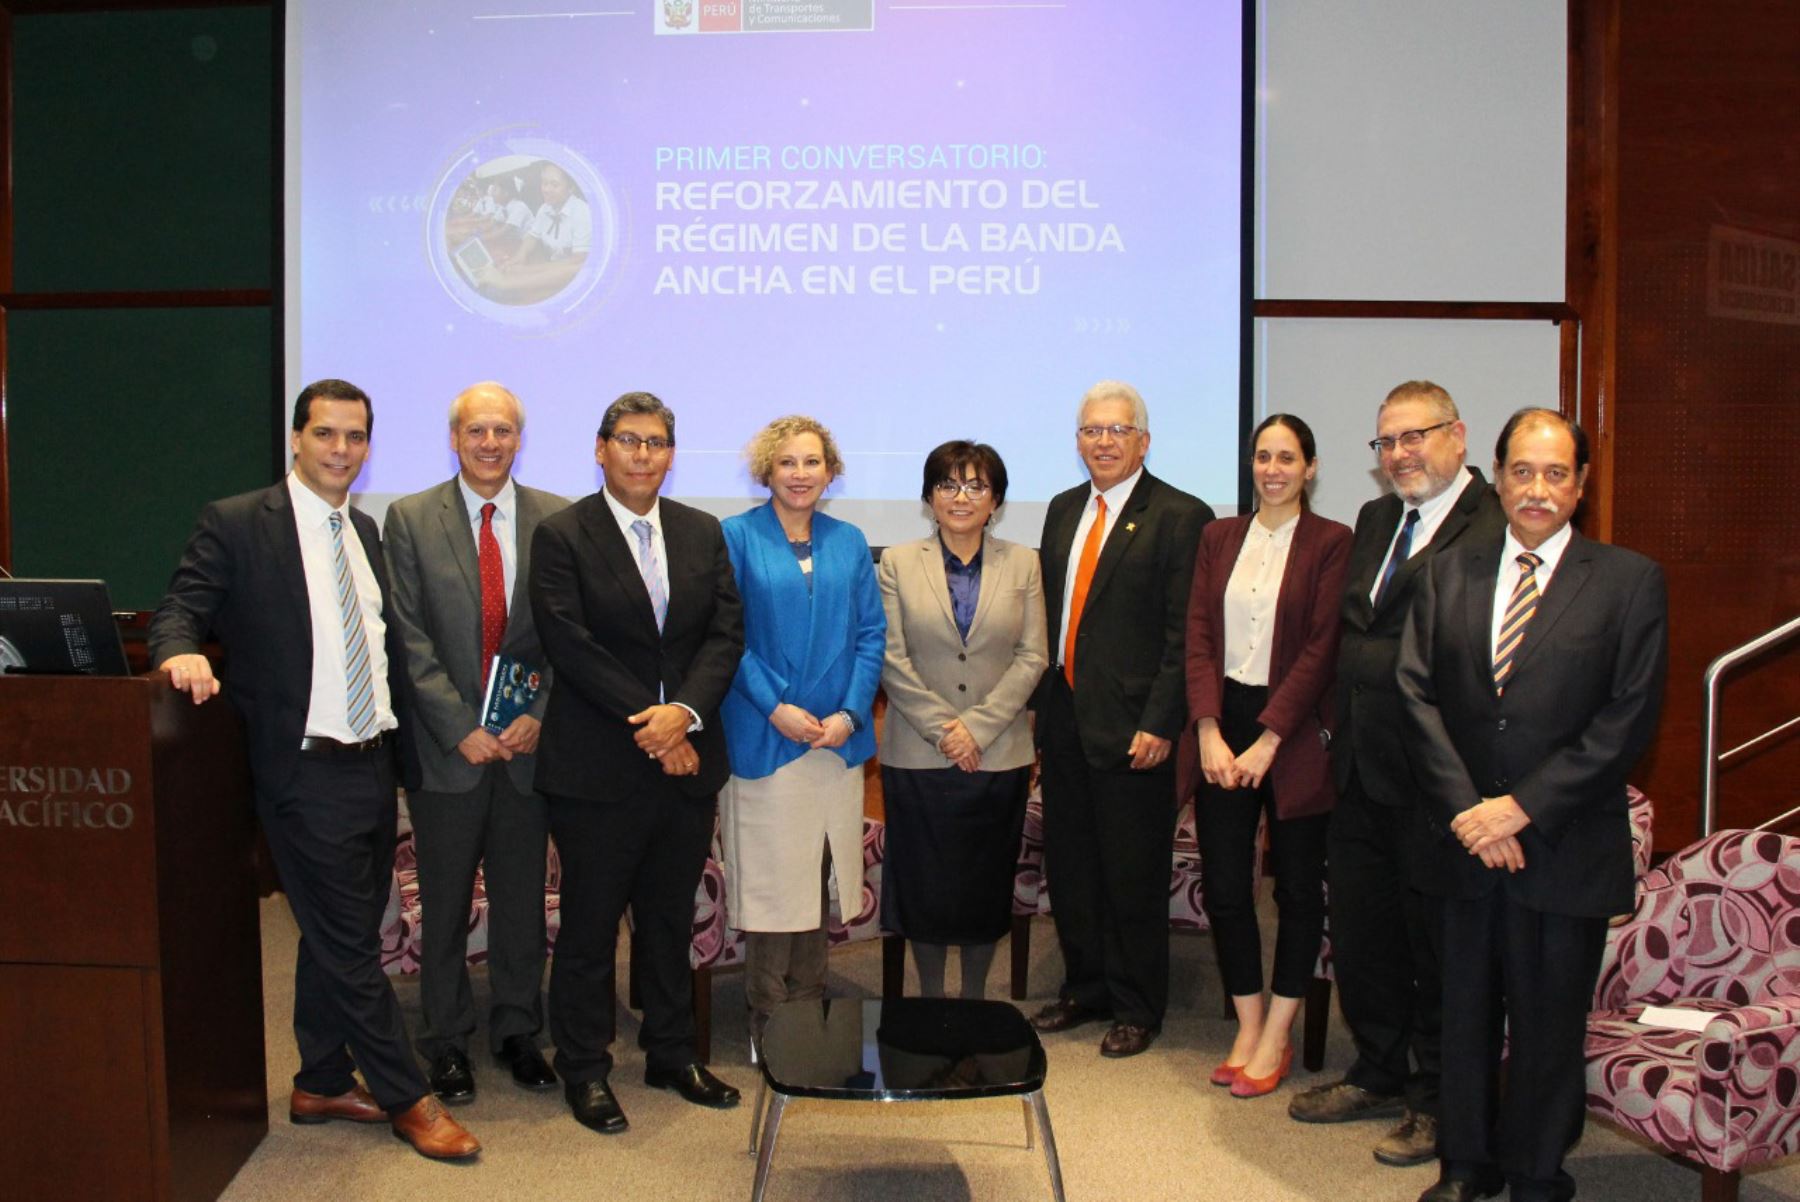 La viceministra de Comunicaciones, Virginia Nakagawa, clausuró el Primer conversatorio: Reforzamiento del régimen de la banda ancha en el Perú, en el que participaron especialistas del Banco Mundial.